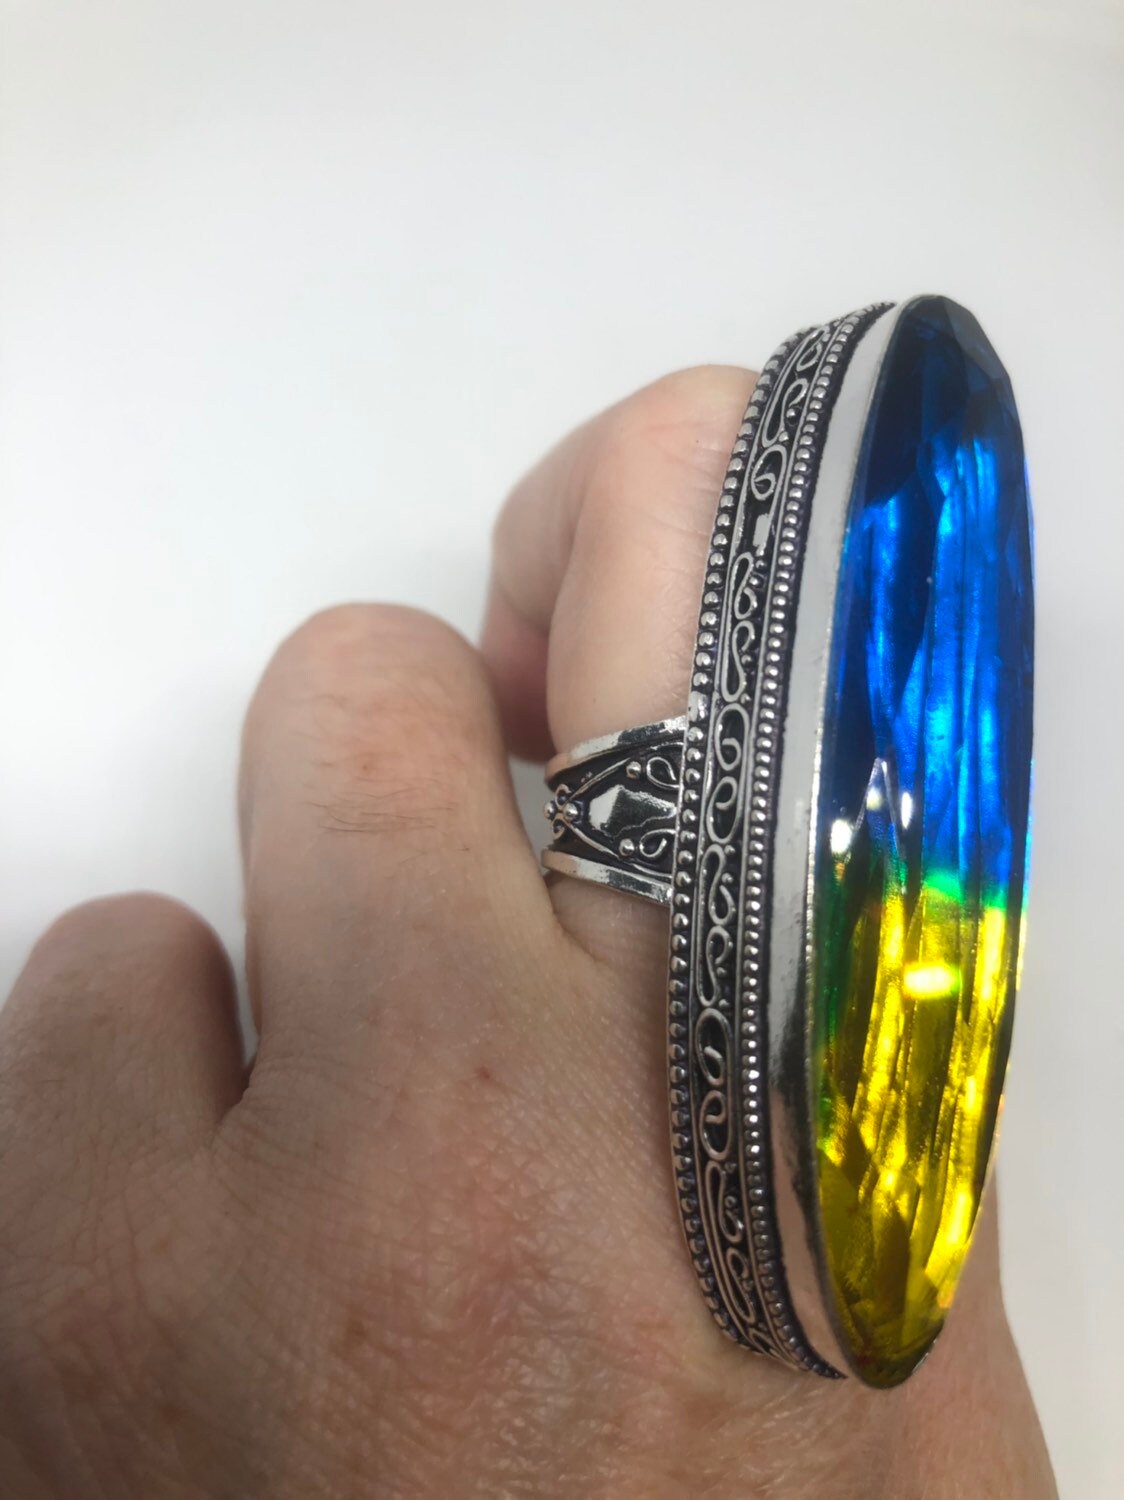 Vintage Aqua Teal Vintage Art Glass Ring 2 Long Knuckle Ring